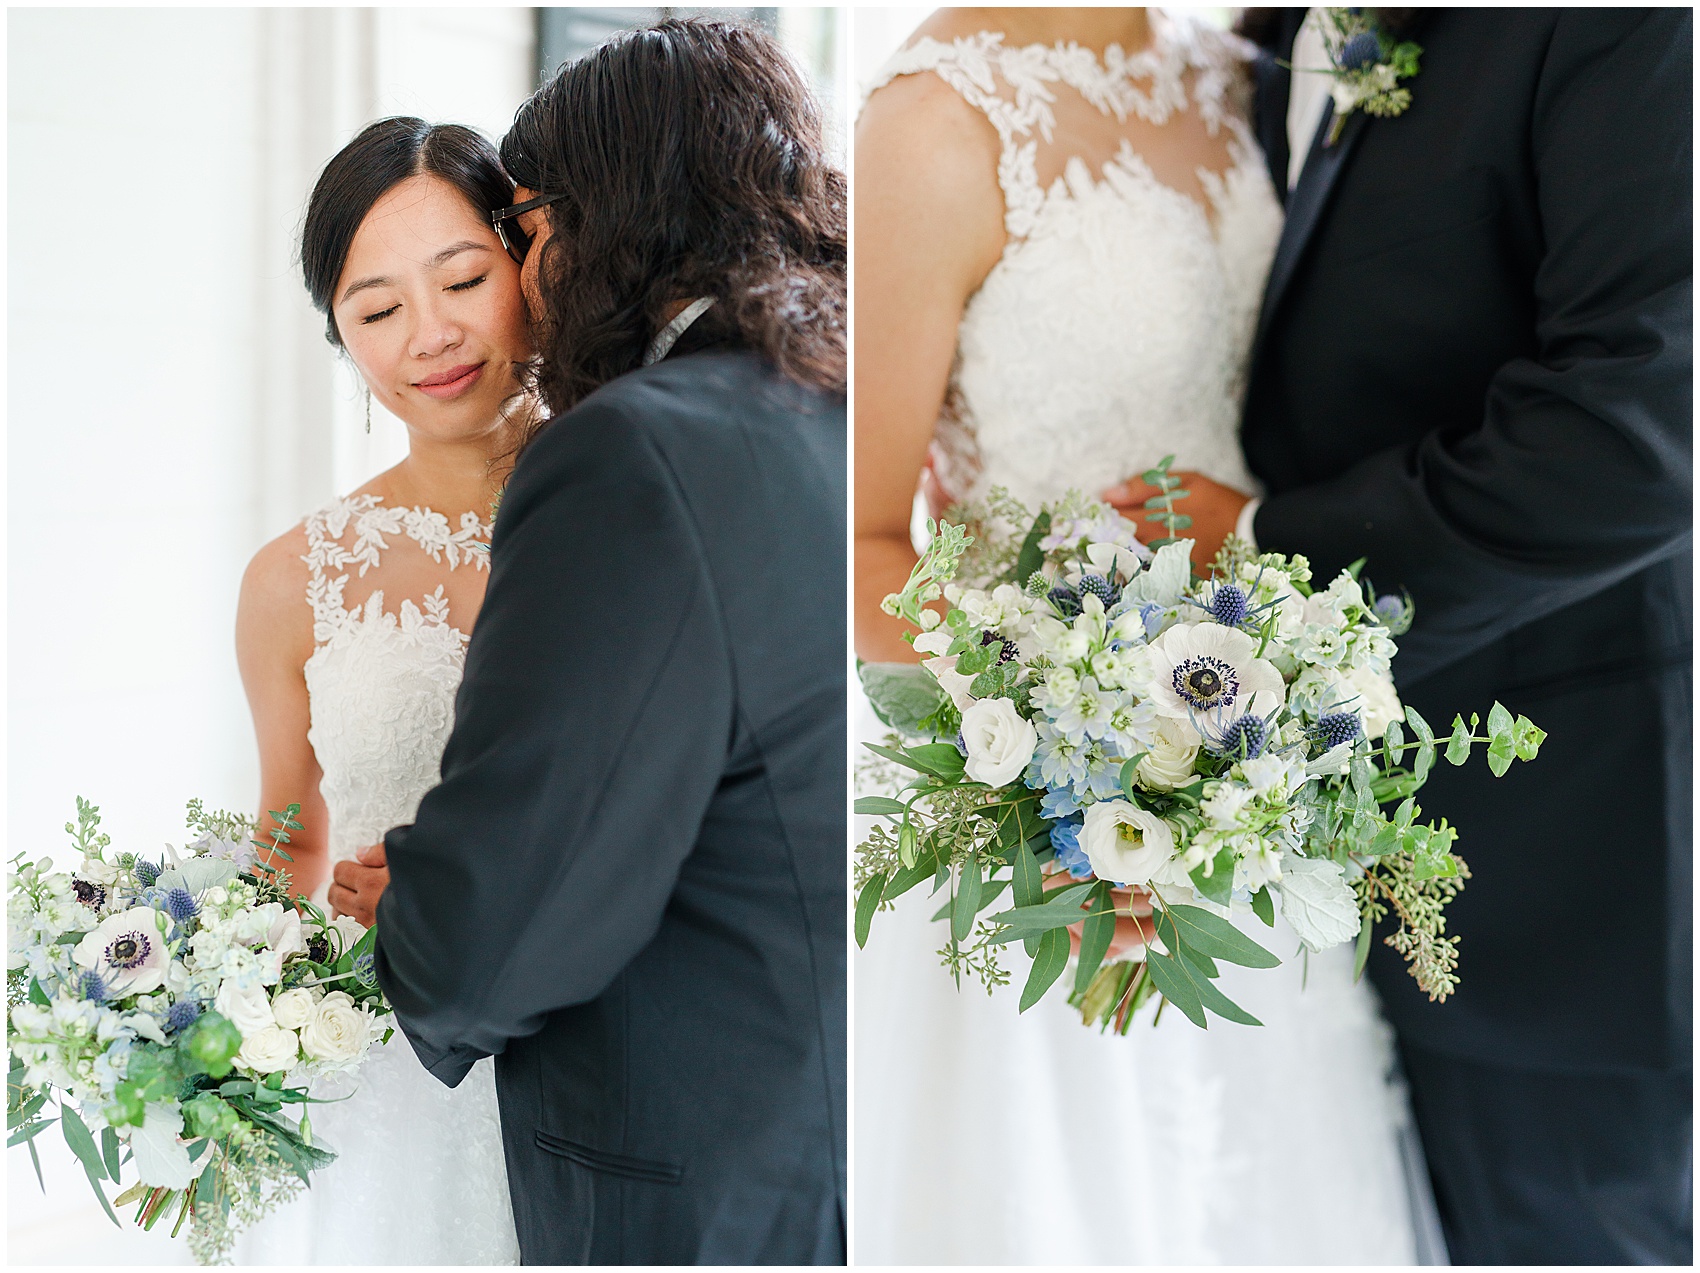 details of a bride's bouquet